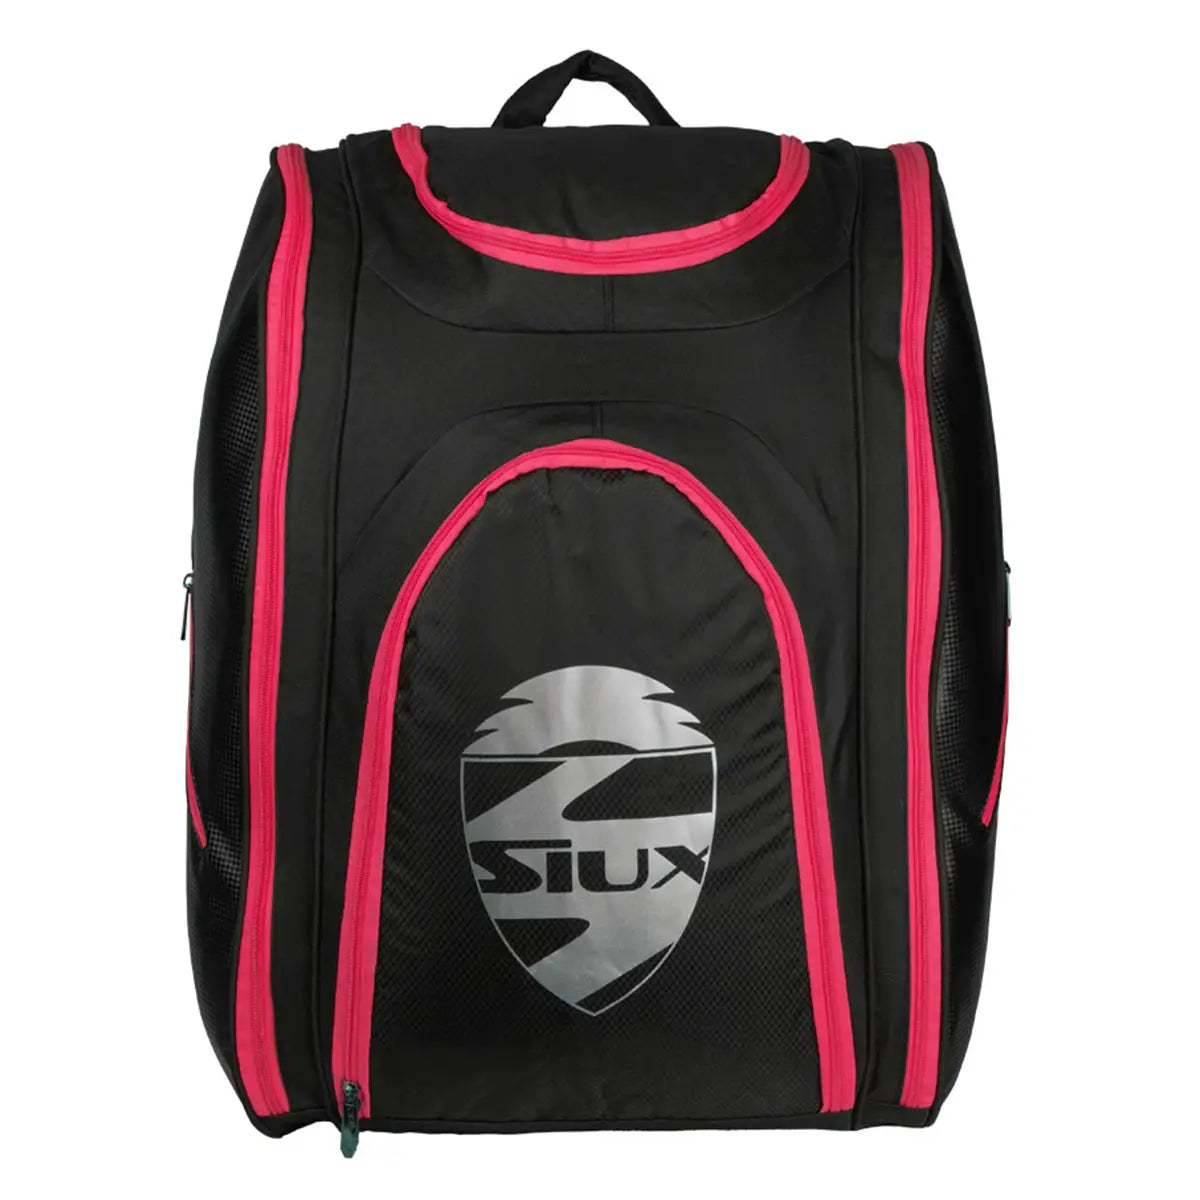 Siux Combi Tour - Padel Racket Bag